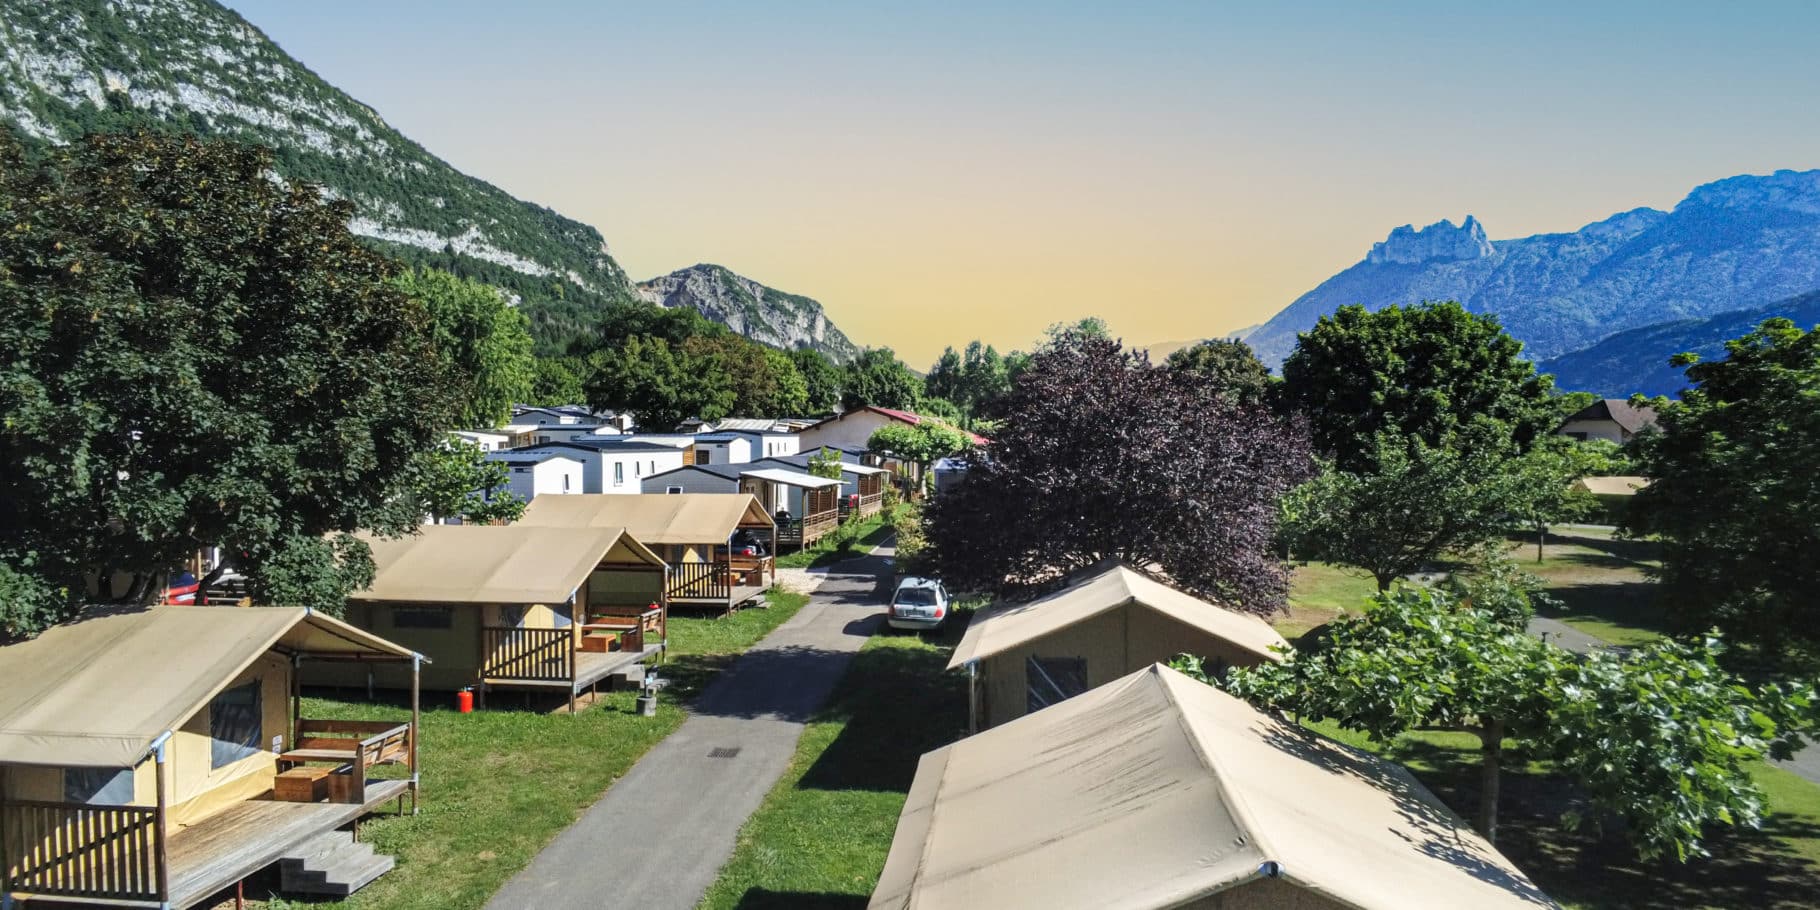 promotions et actualités du camping idéal à Annecy